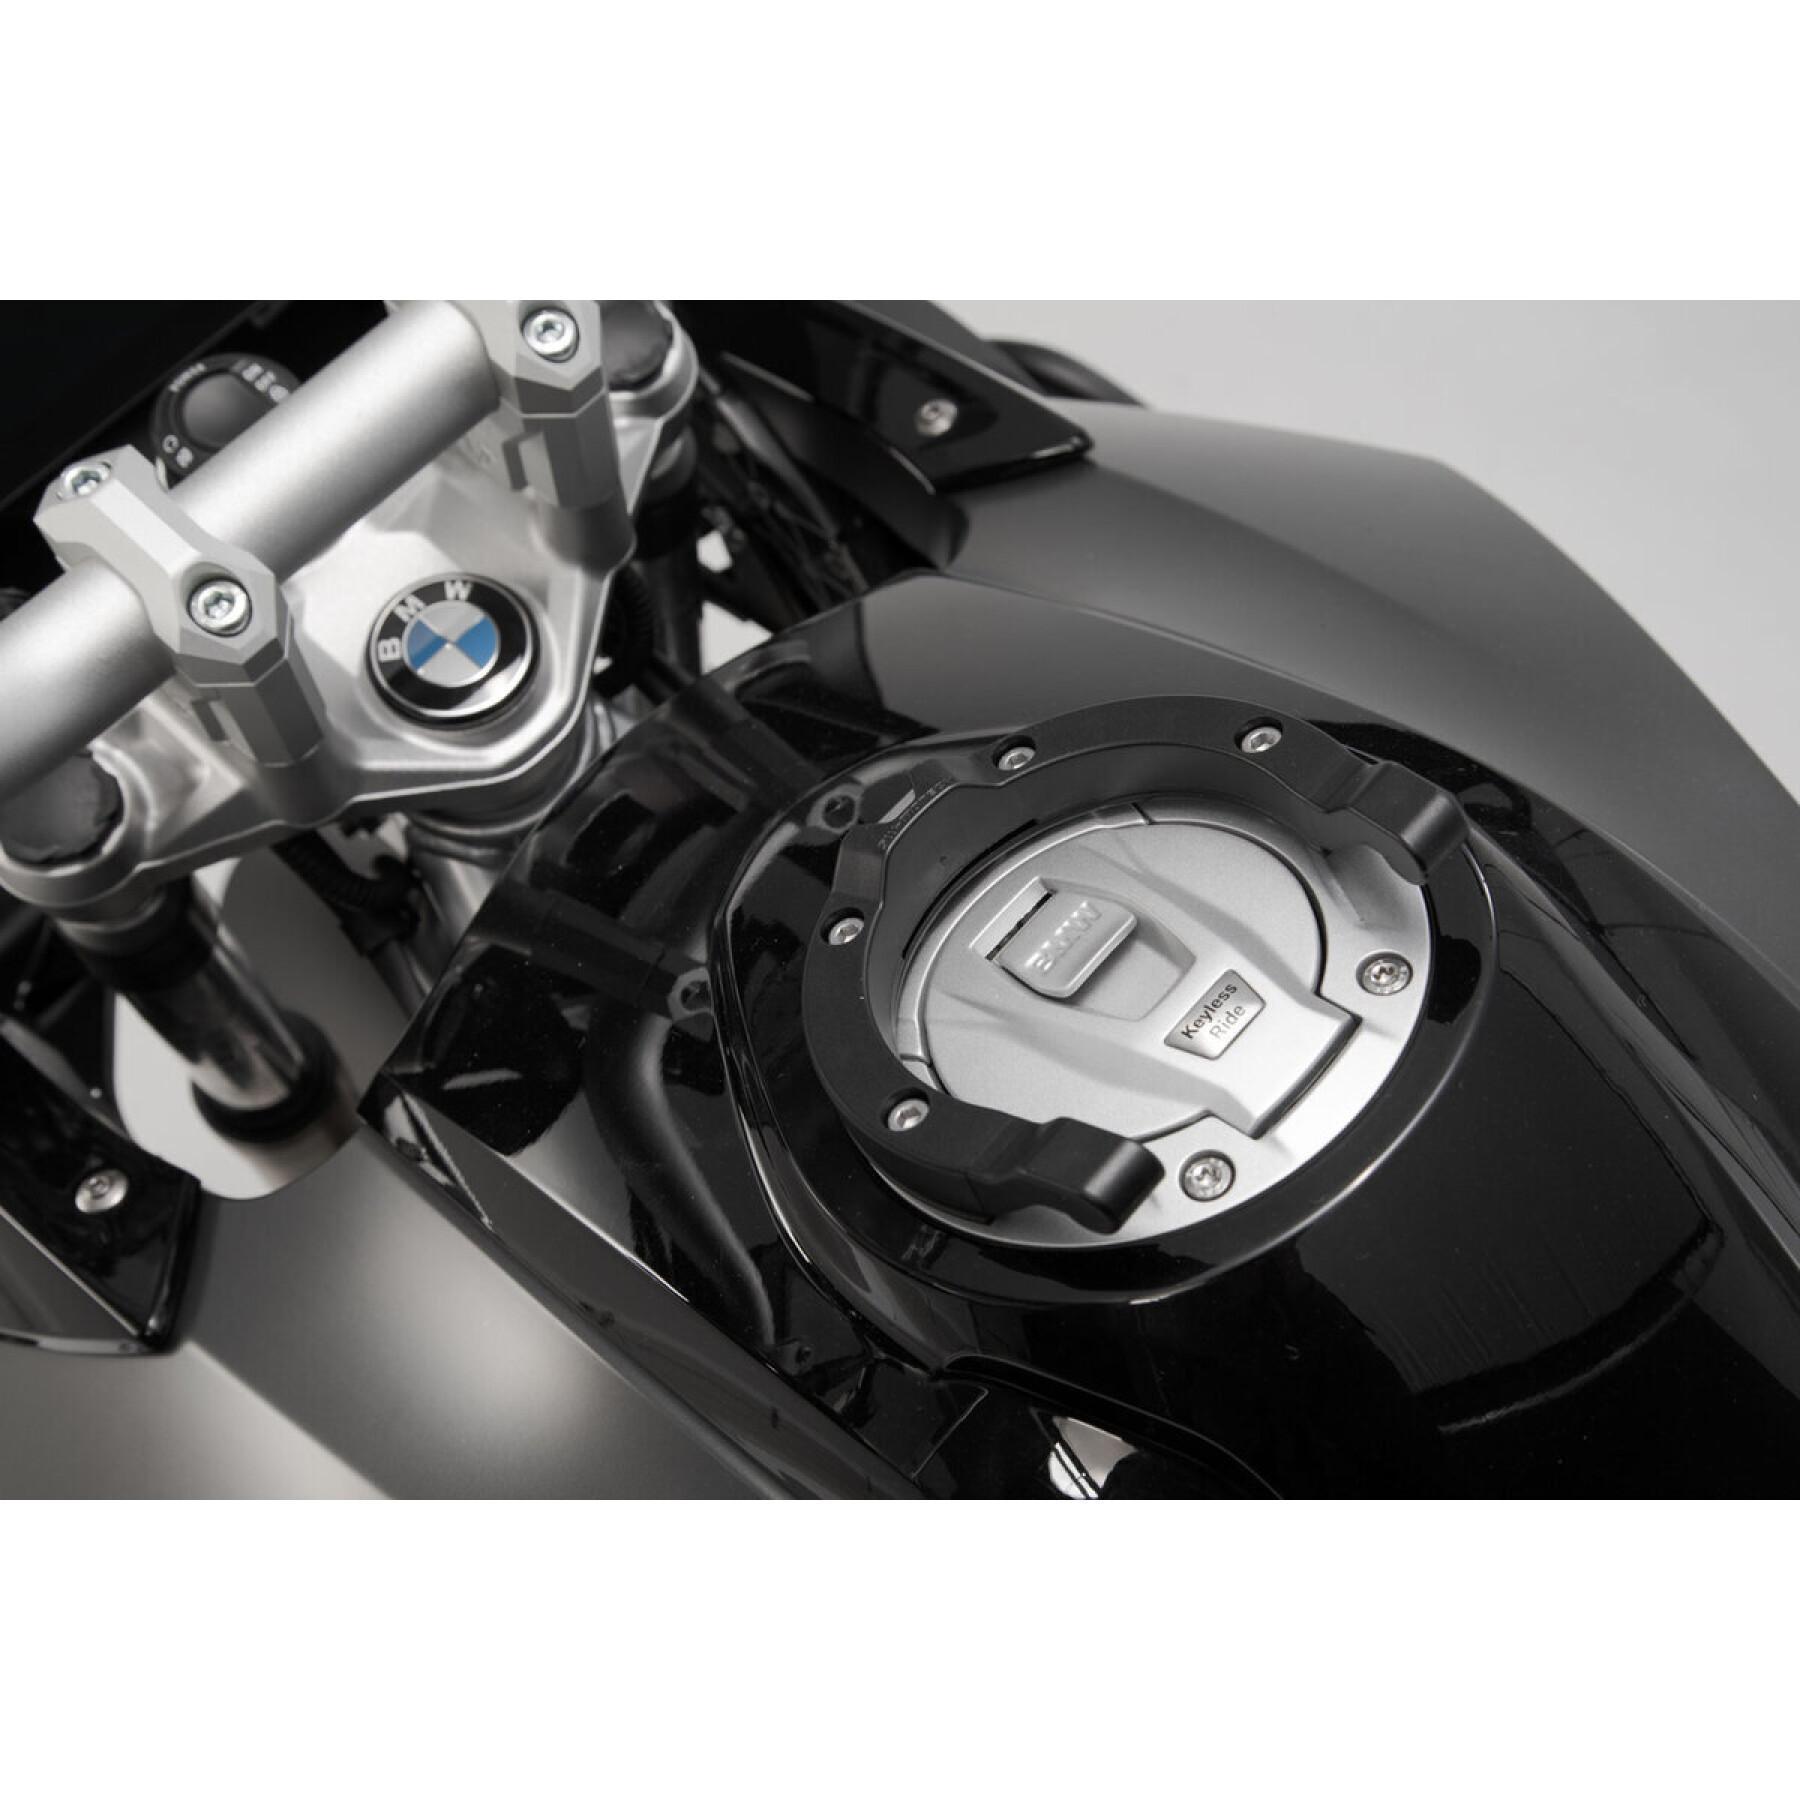 Anel do tanque SW-Motech Ion BMW / Ducati / KTM / Triumph